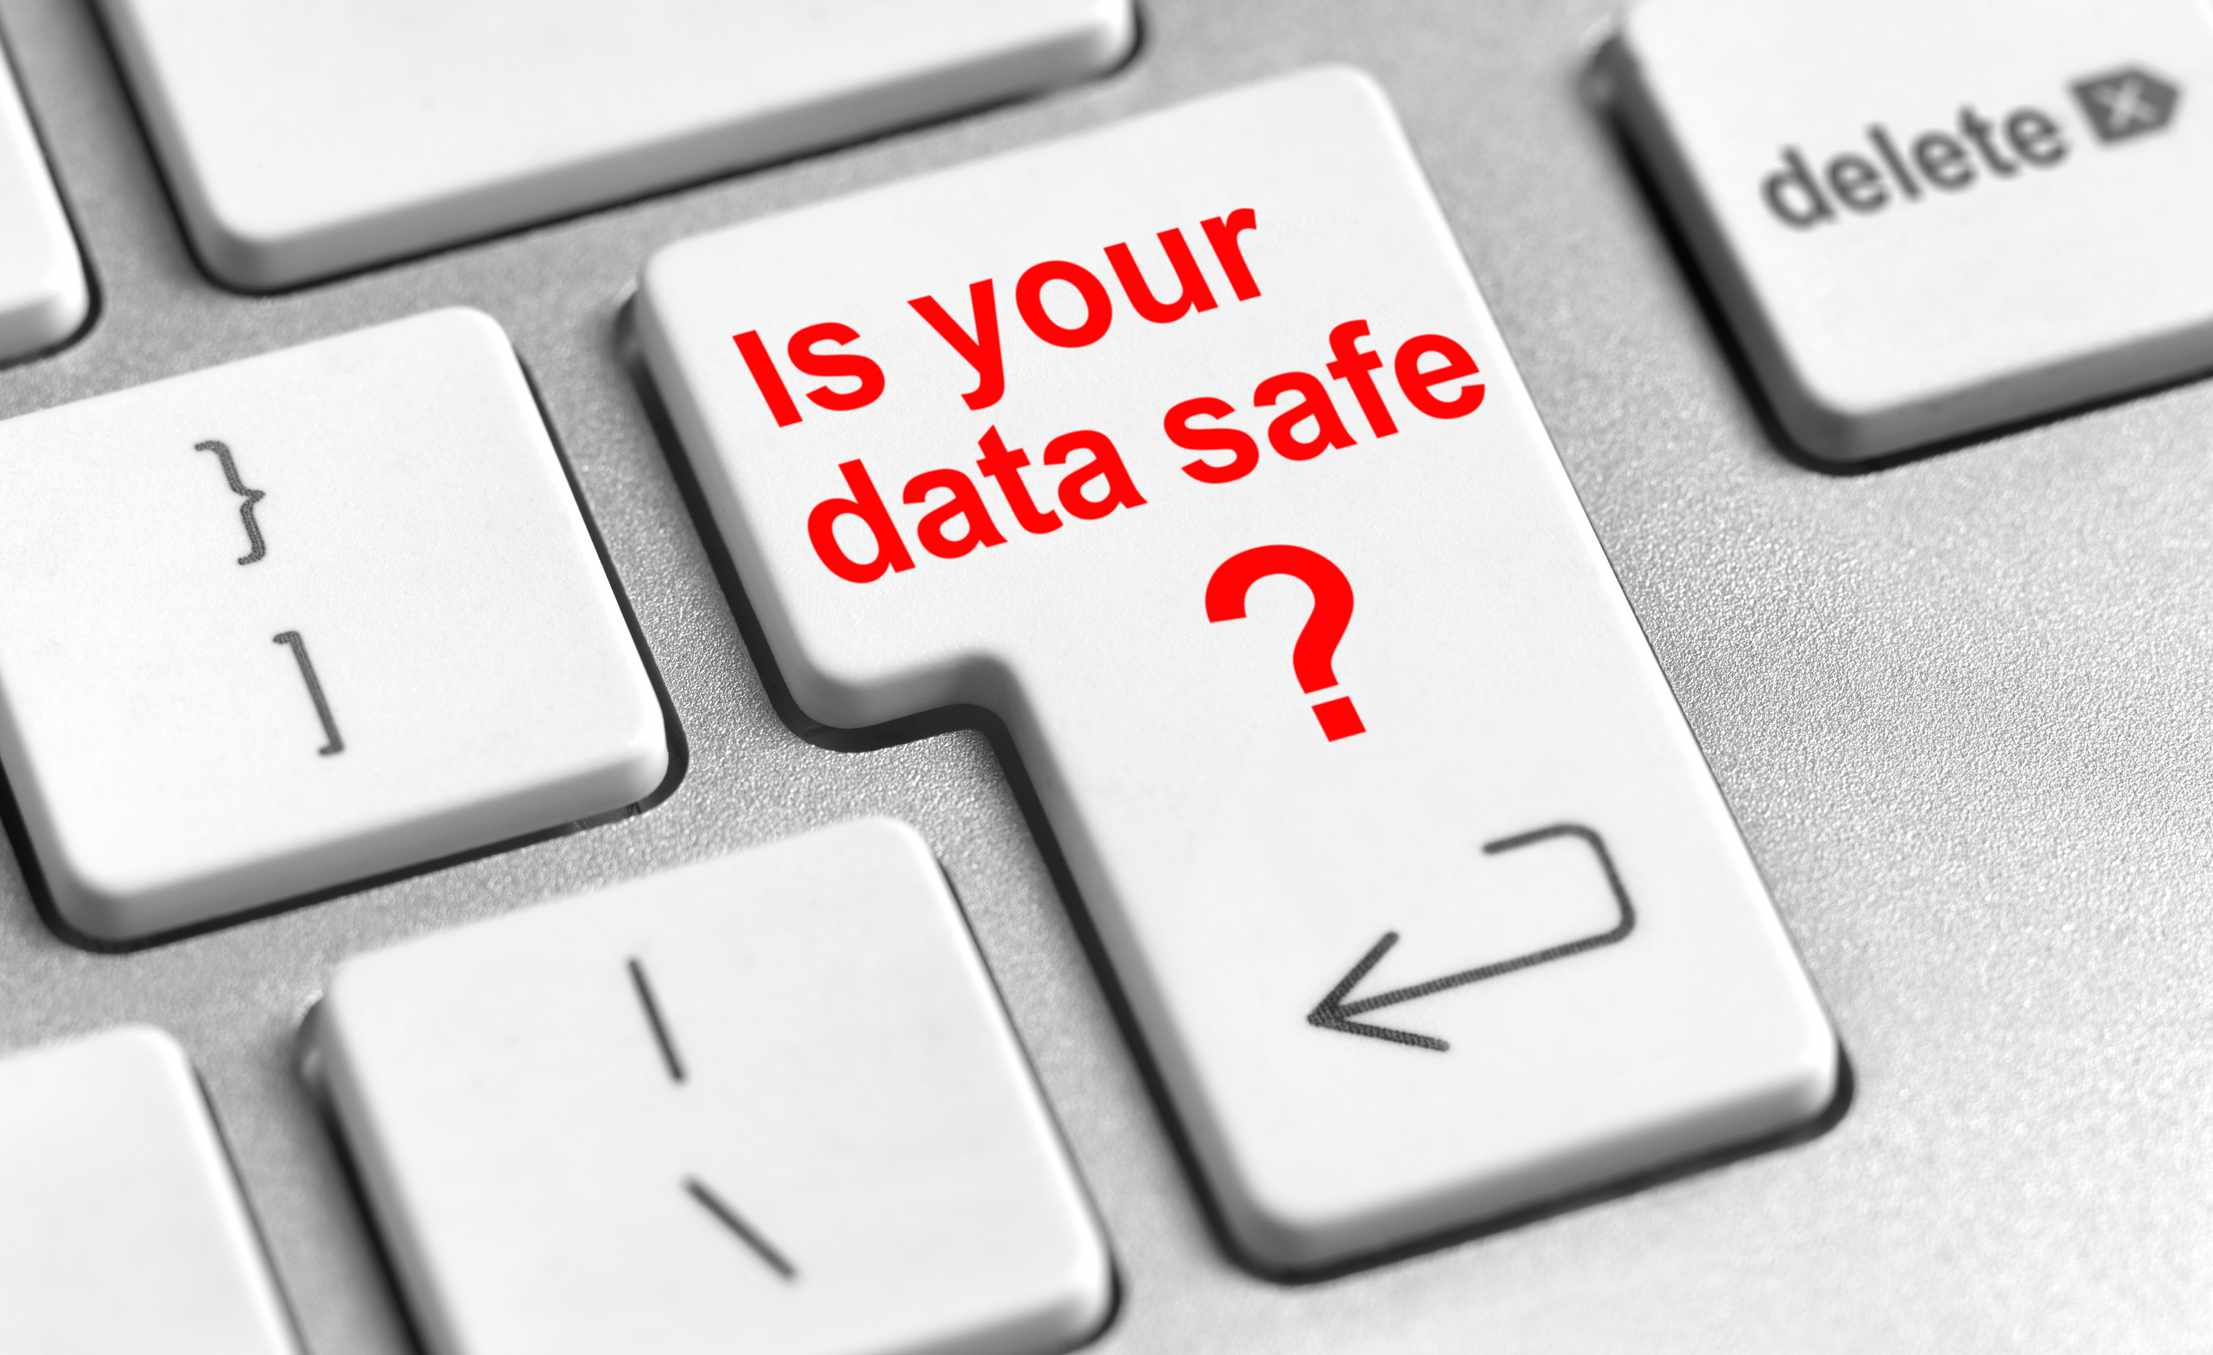 Een toets op een toetsenbord met de vraag "Is uw gegevens veilig" erop gedrukt in rode letters.